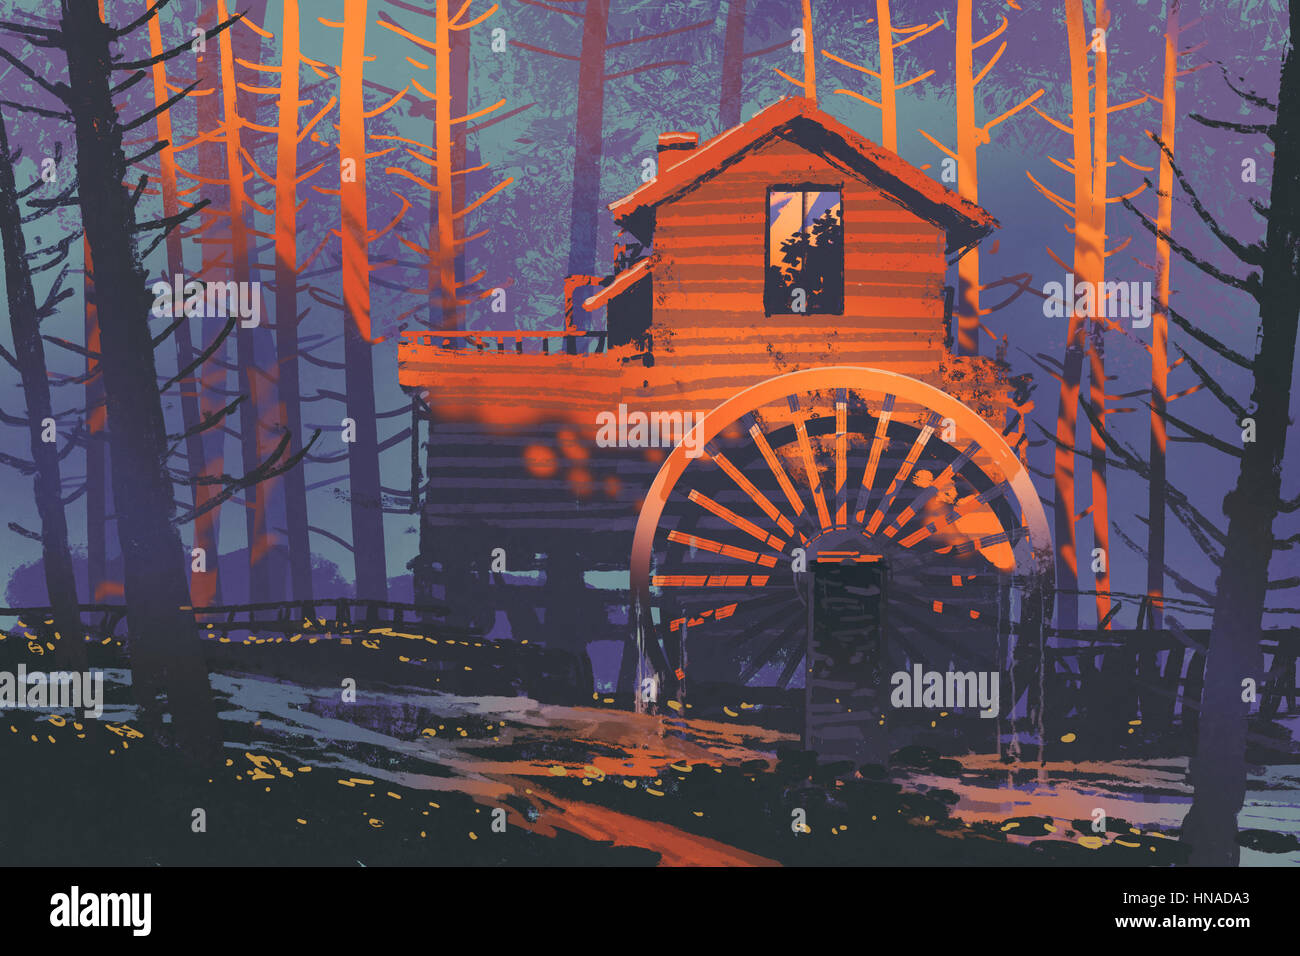 Casa in legno con un waterwheel nella foresta al tramonto, illustrazione pittura Foto Stock